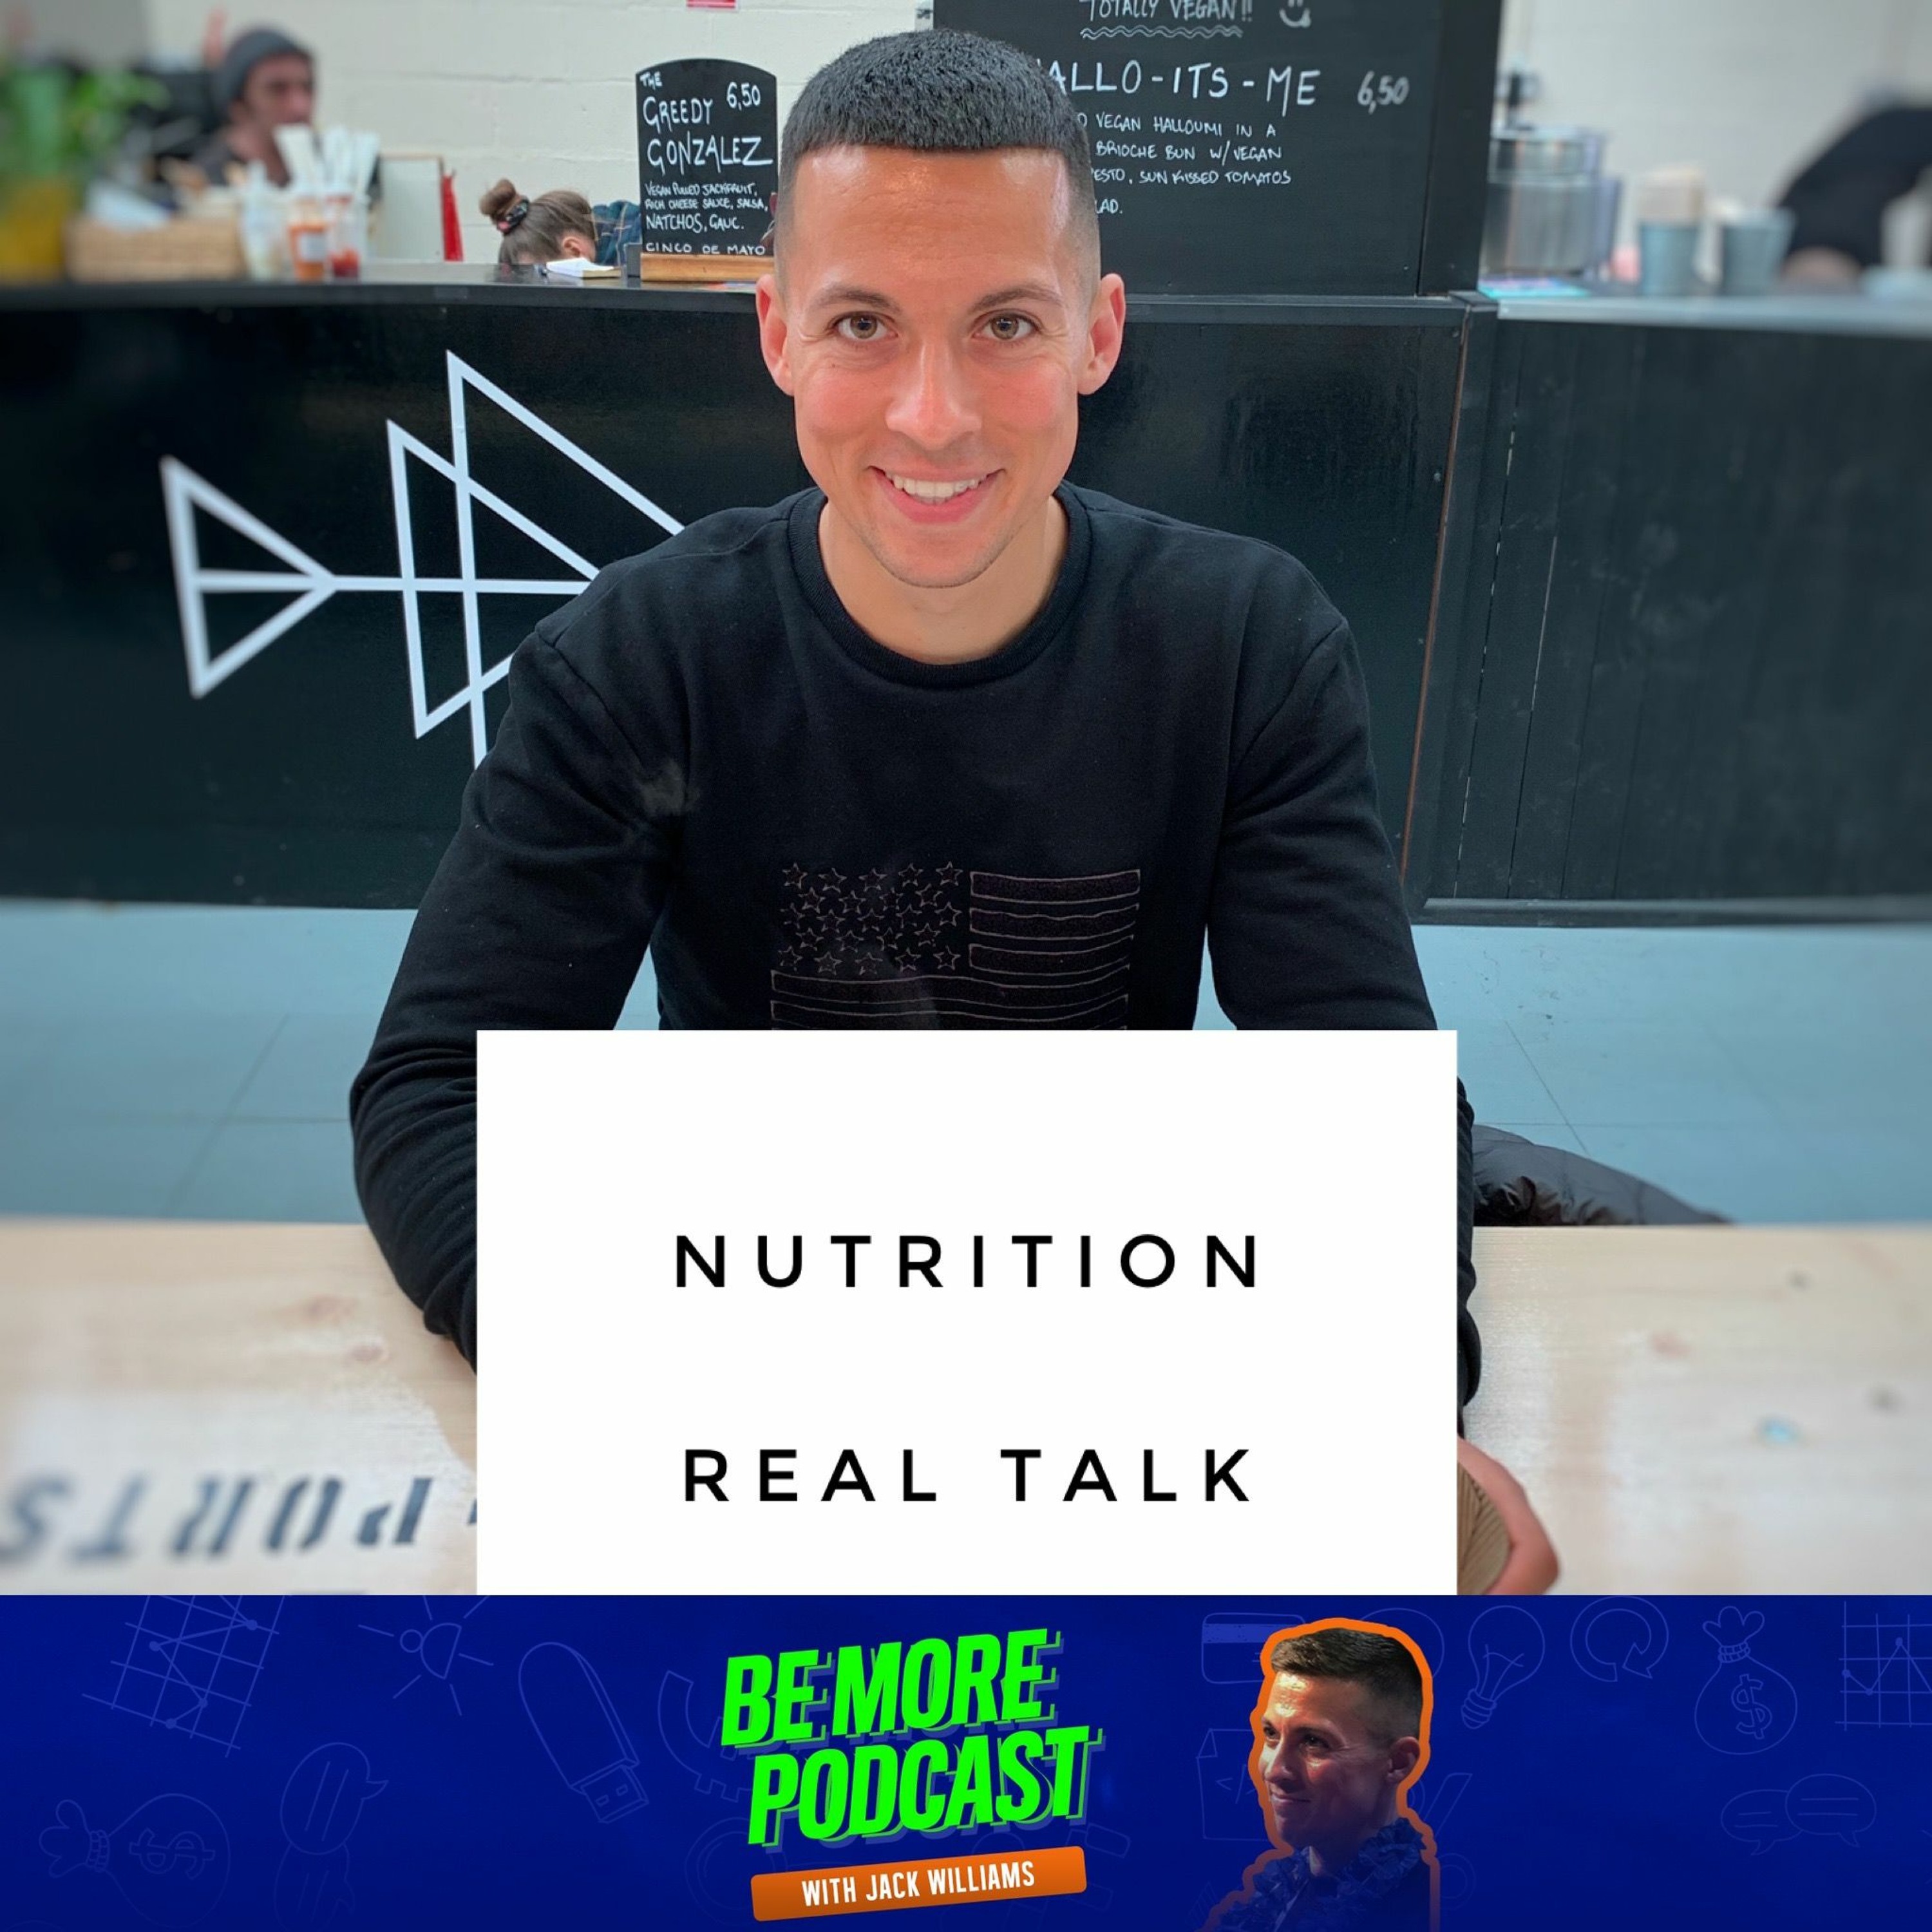 NUTRITION REAL TALK